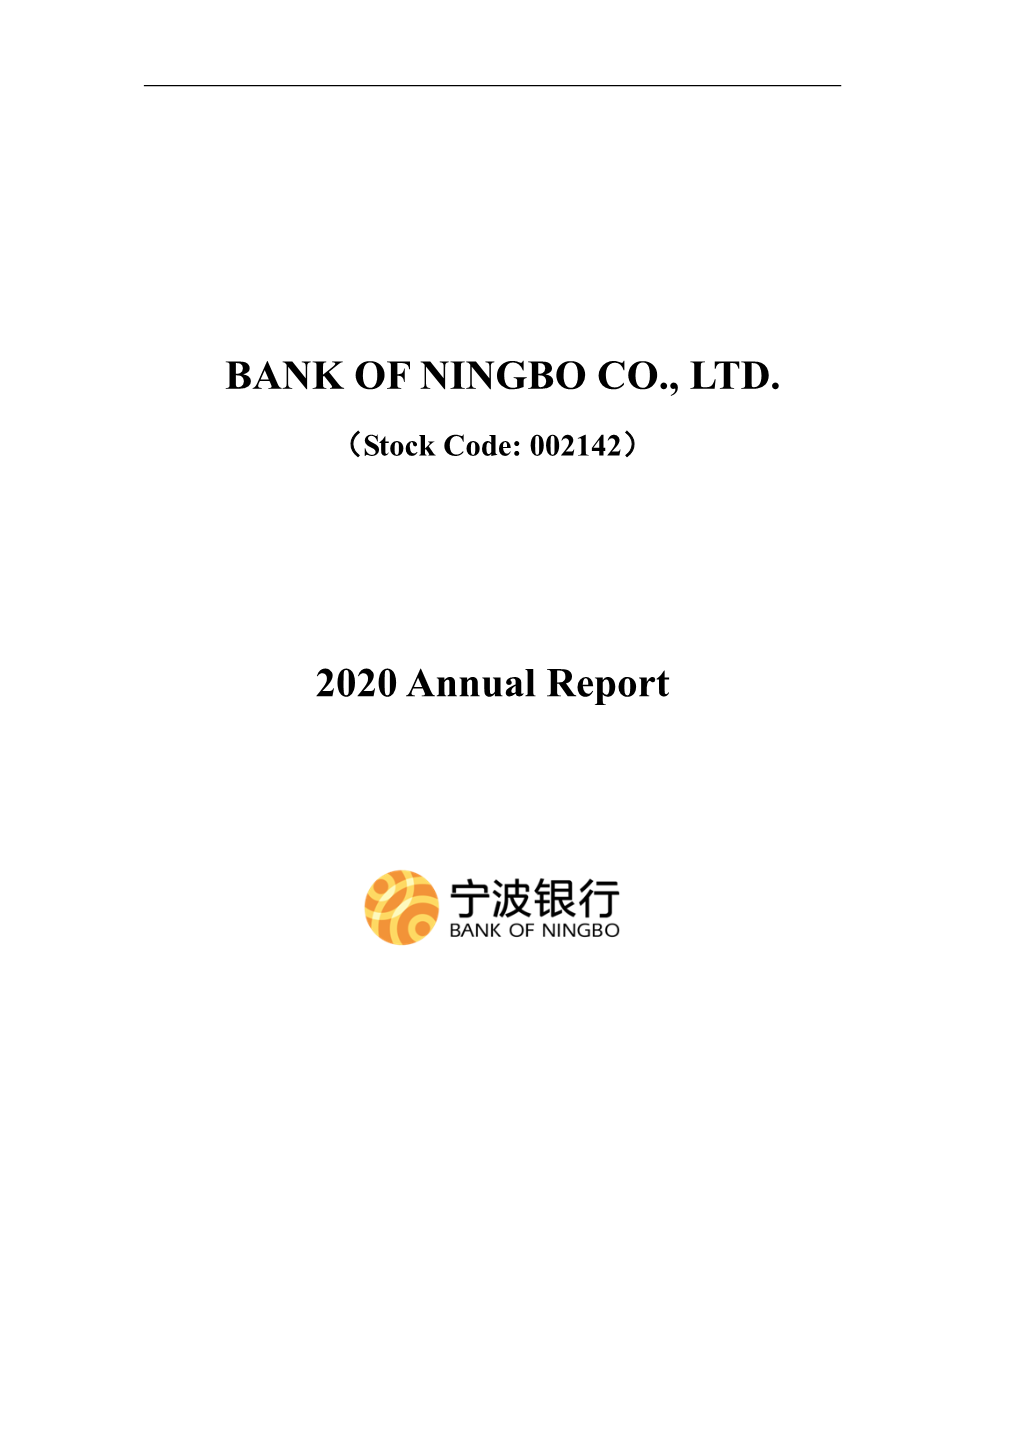 BANK of NINGBO CO., LTD. 2020 Annual Report